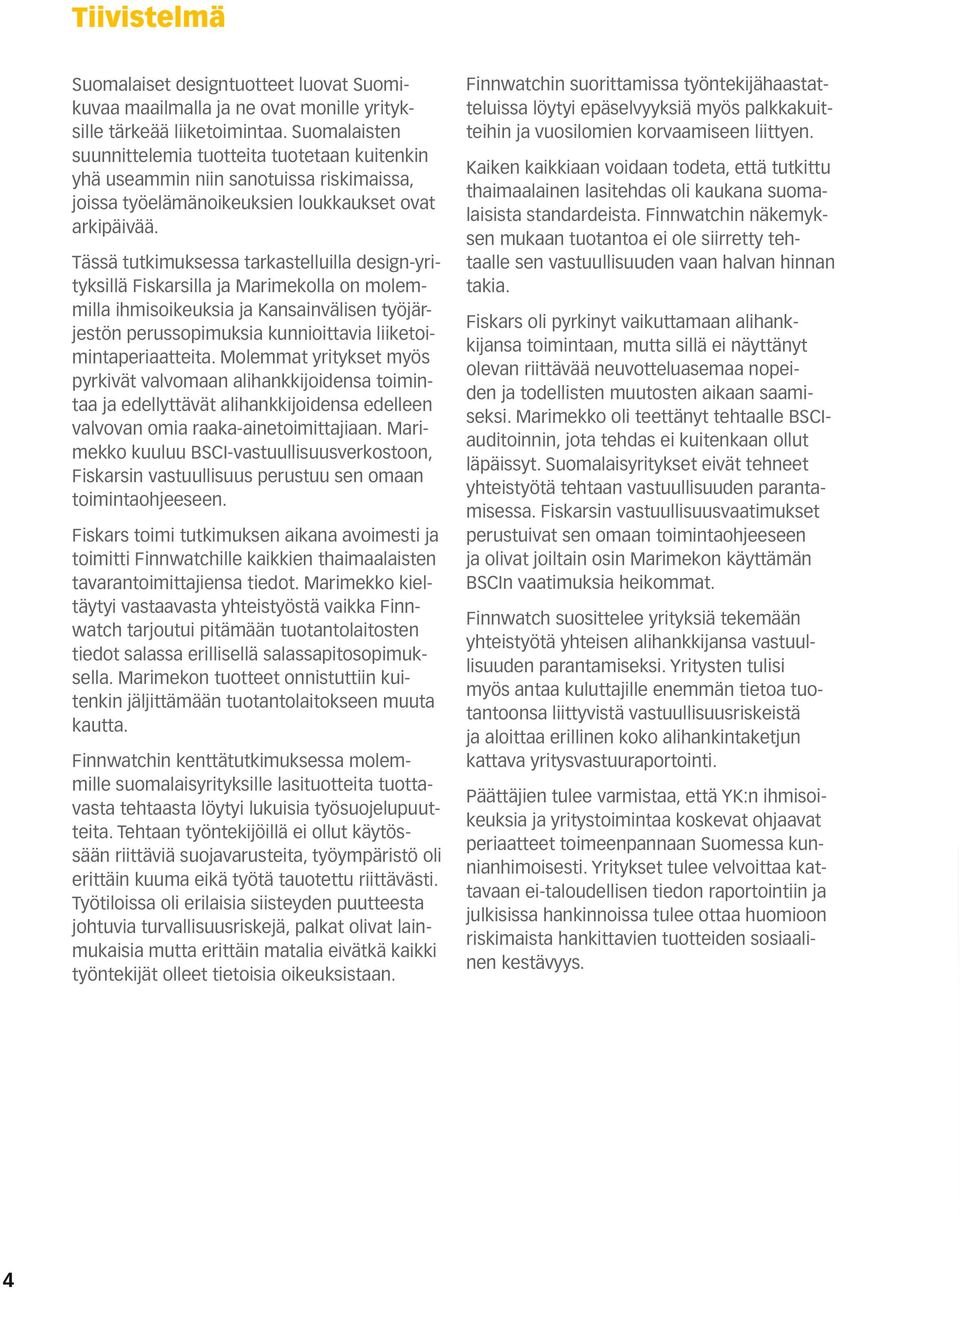 Tässä tutkimuksessa tarkastelluilla design-yrityksillä Fiskarsilla ja Marimekolla on molemmilla ihmisoikeuksia ja Kansainvälisen työjärjestön perussopimuksia kunnioittavia liiketoimintaperiaatteita.